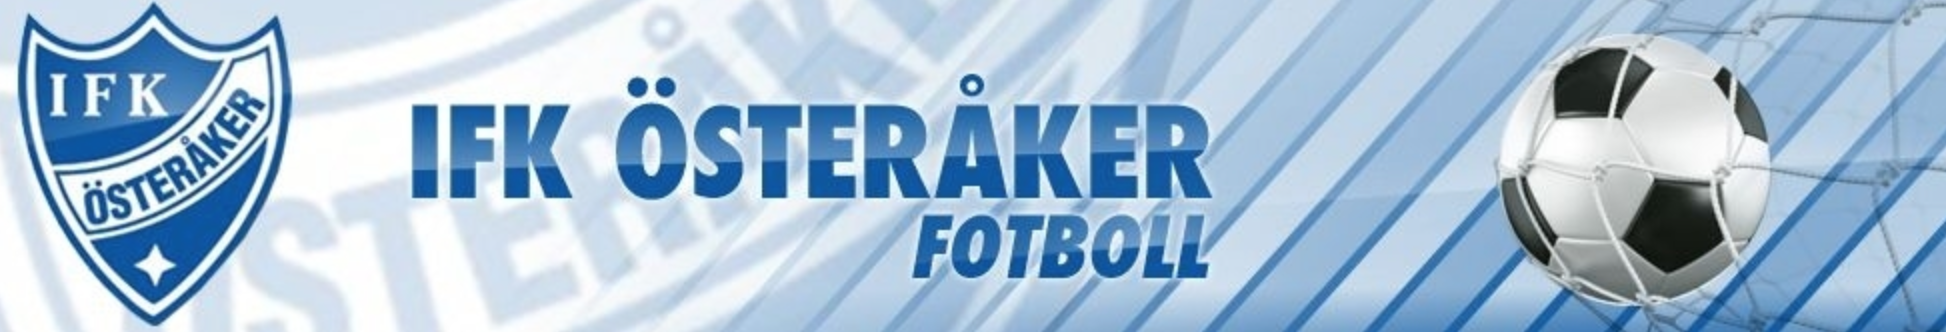 Föräldramöte IFK